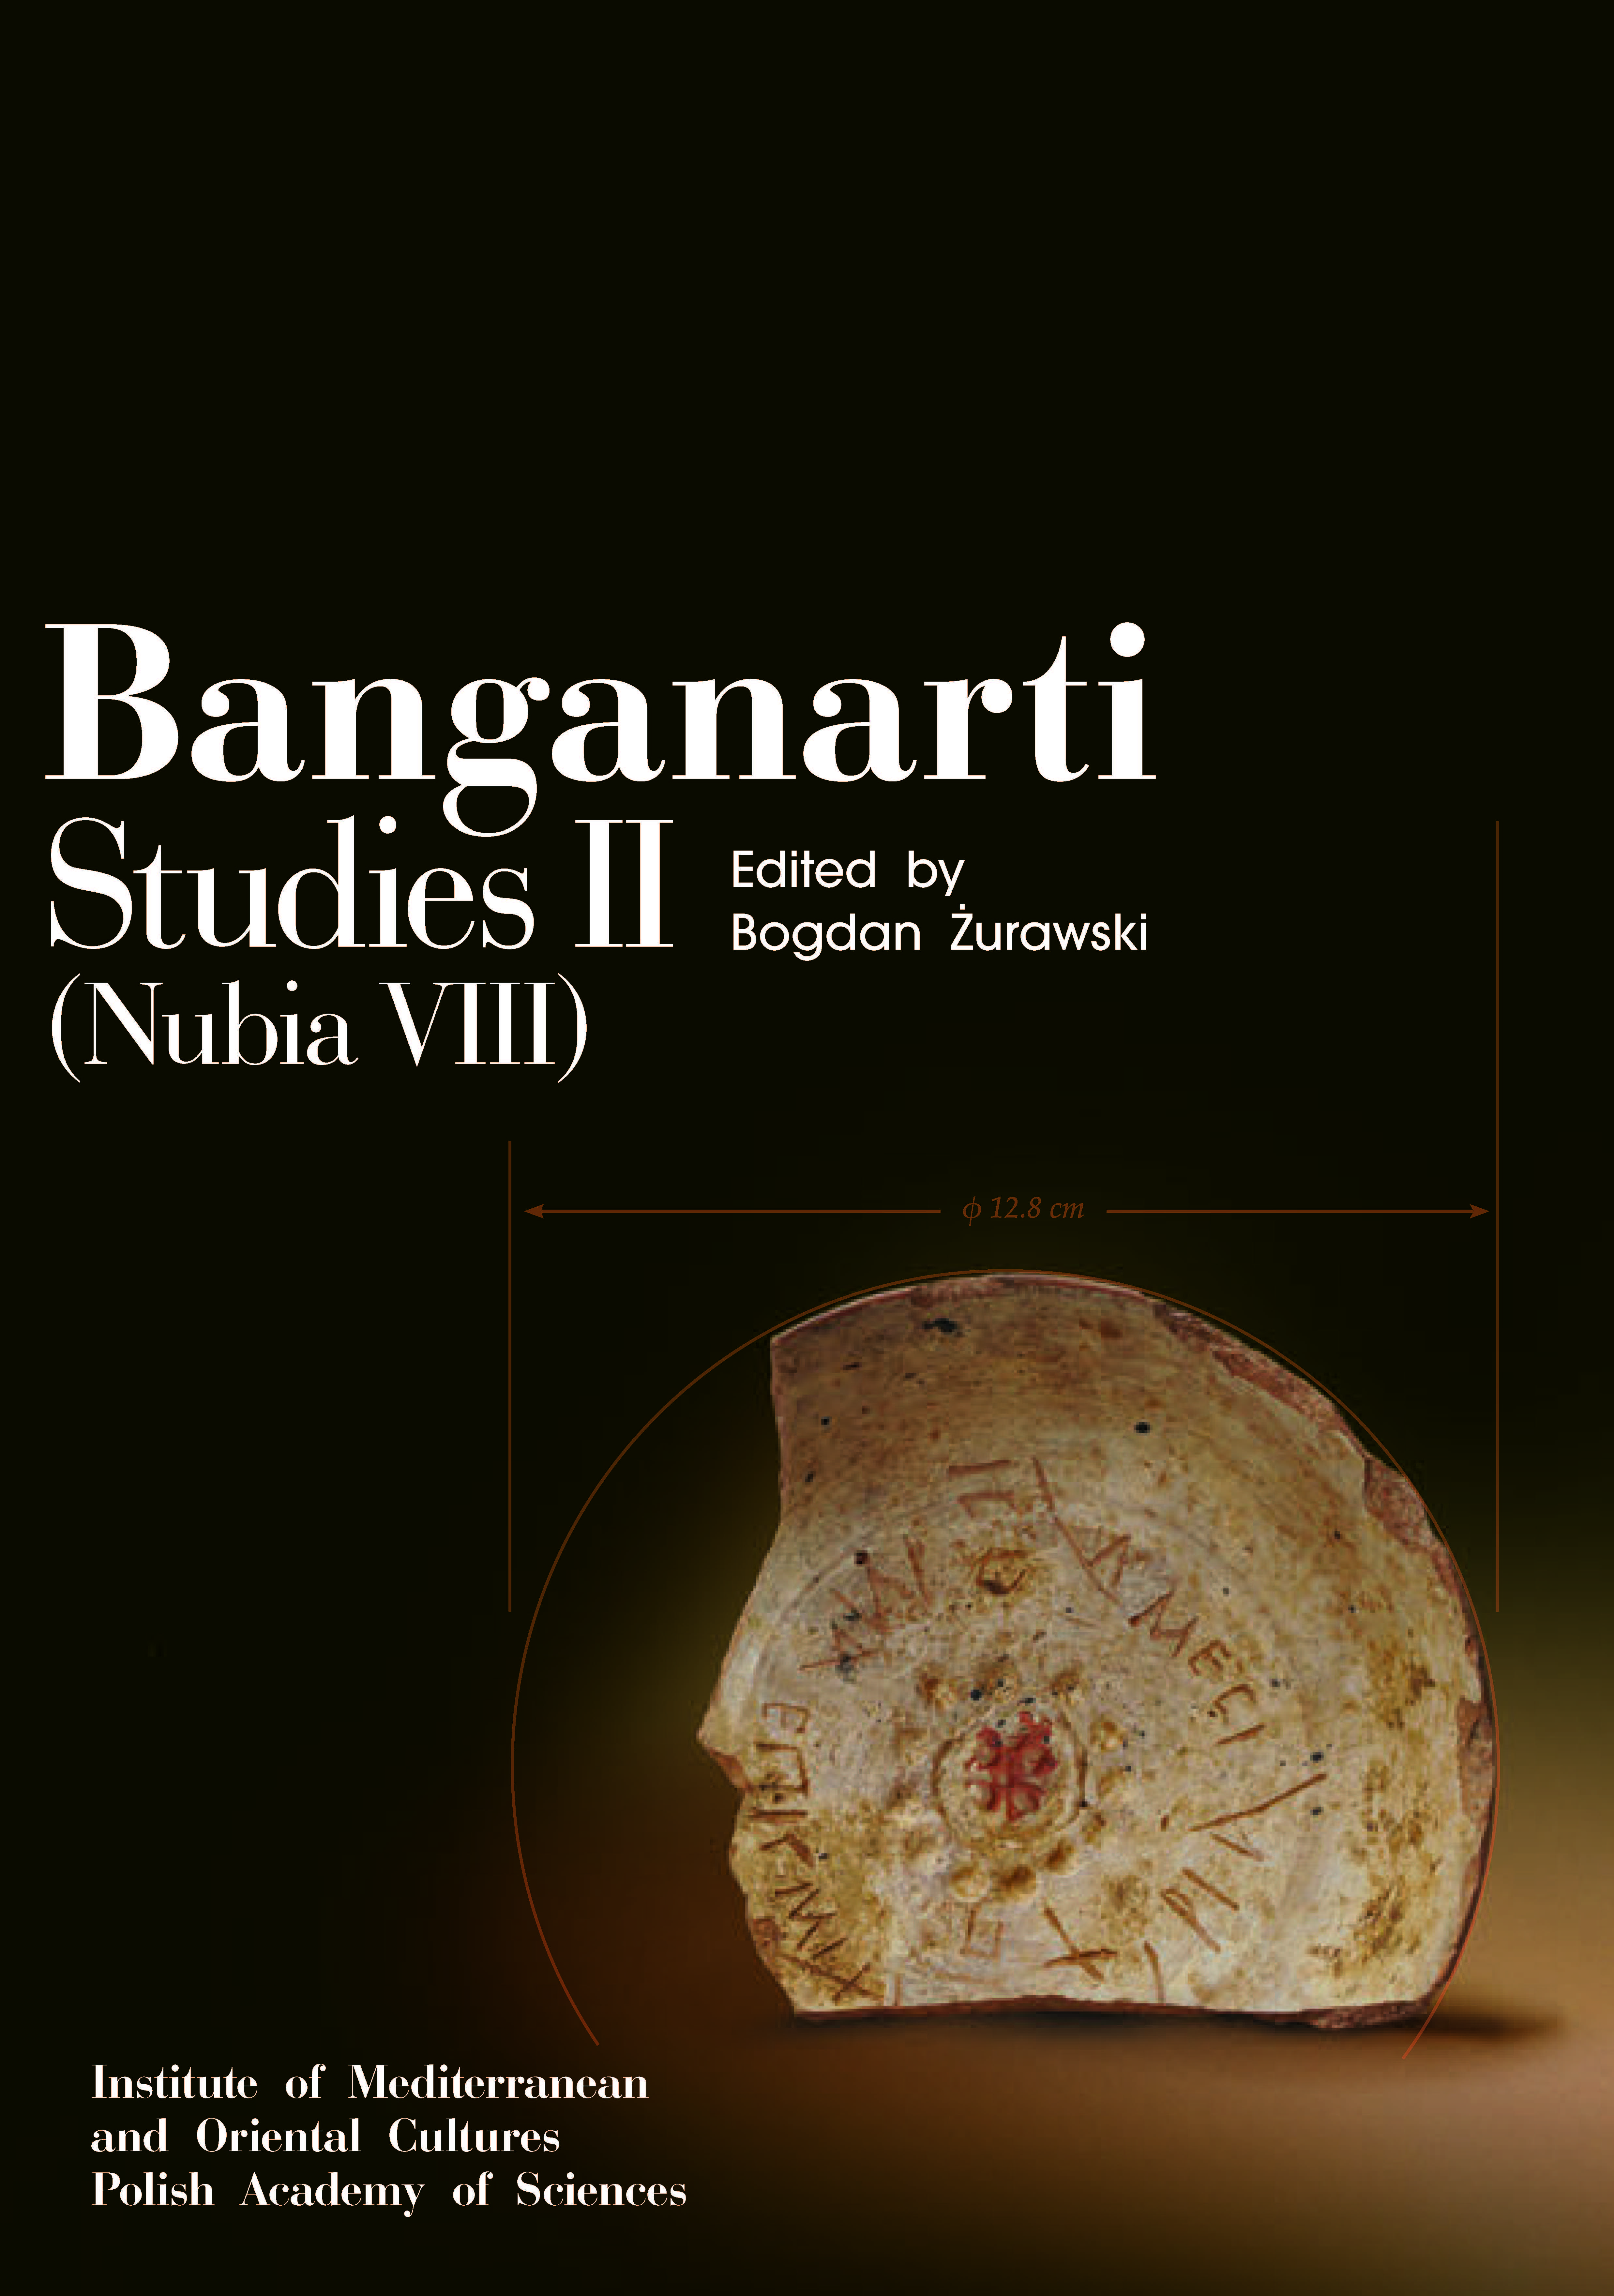 BANGANARTI STUDIES II first